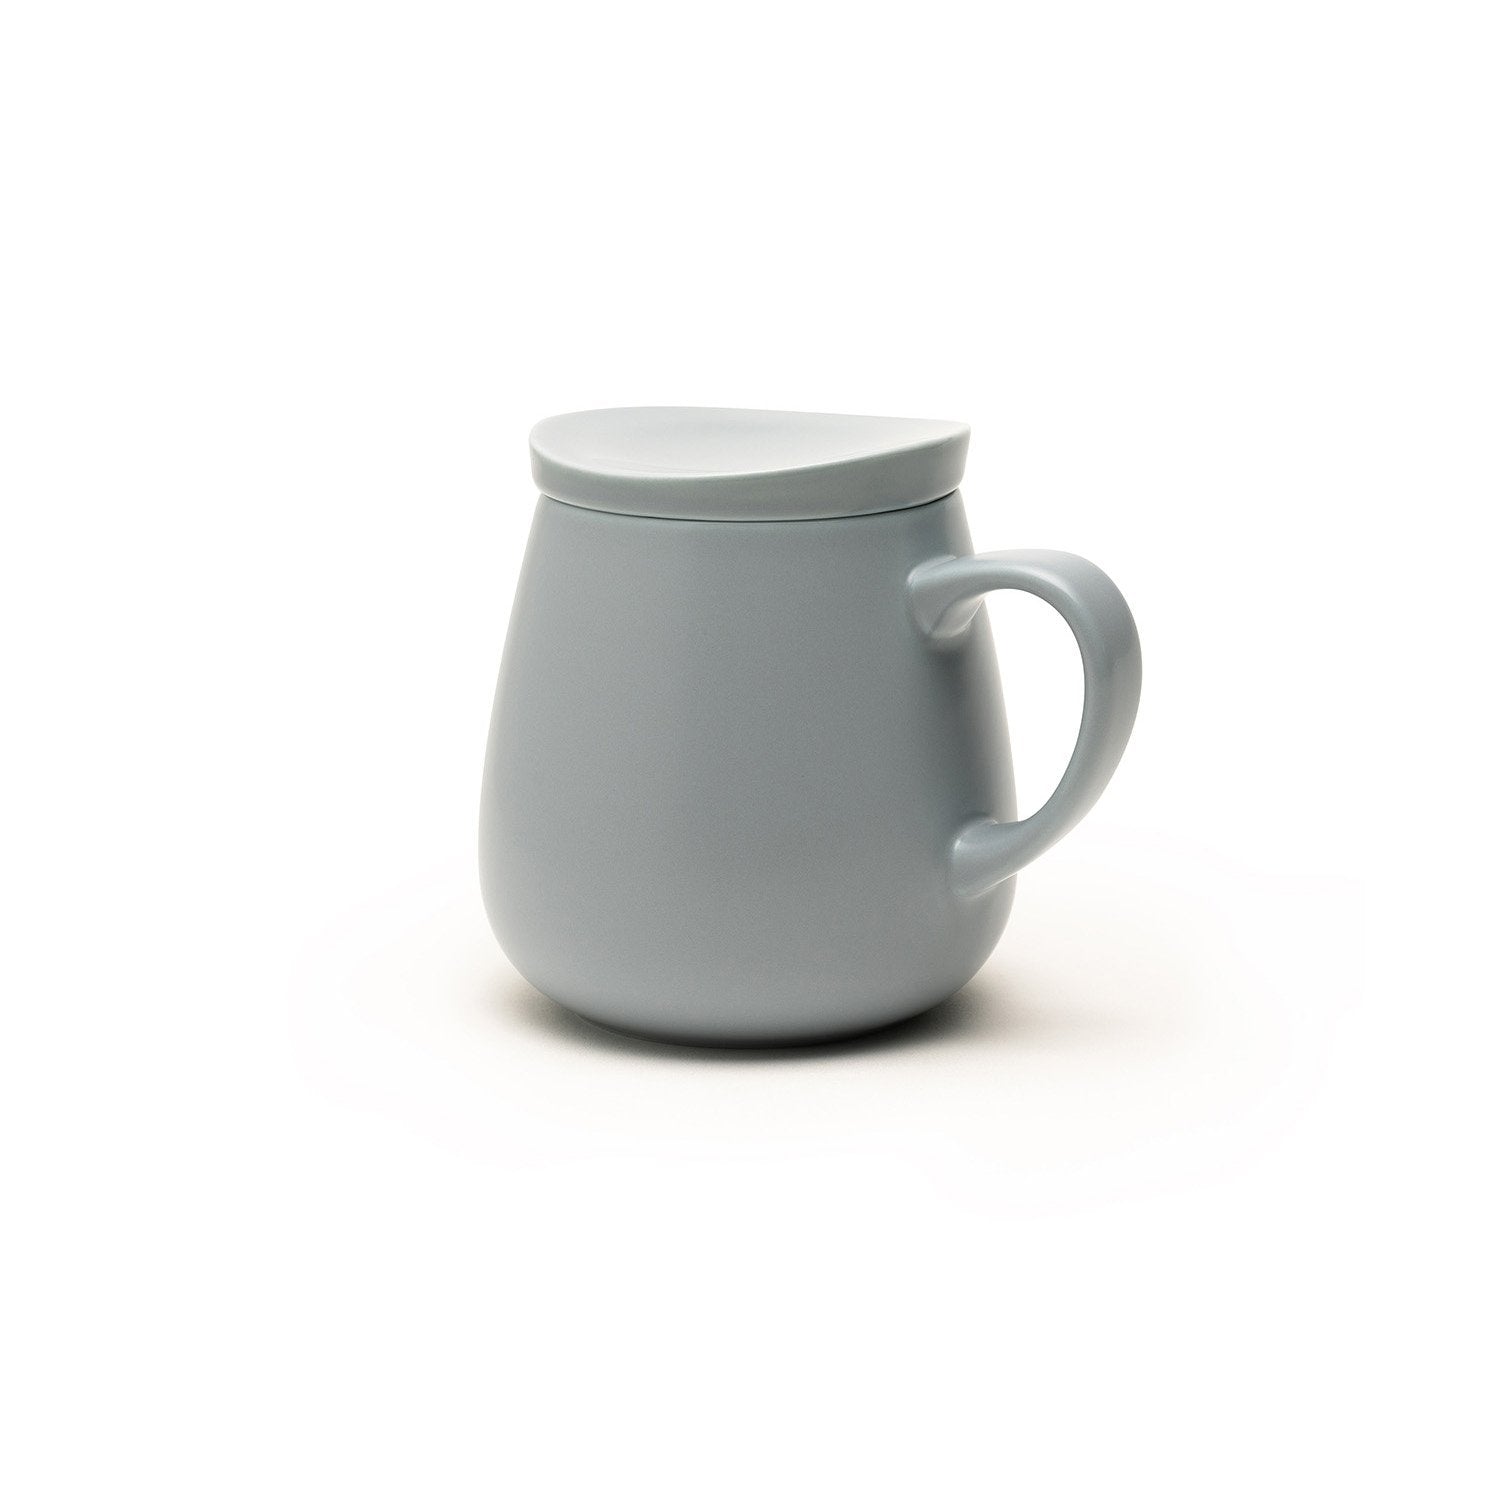 Large gray mug with lid